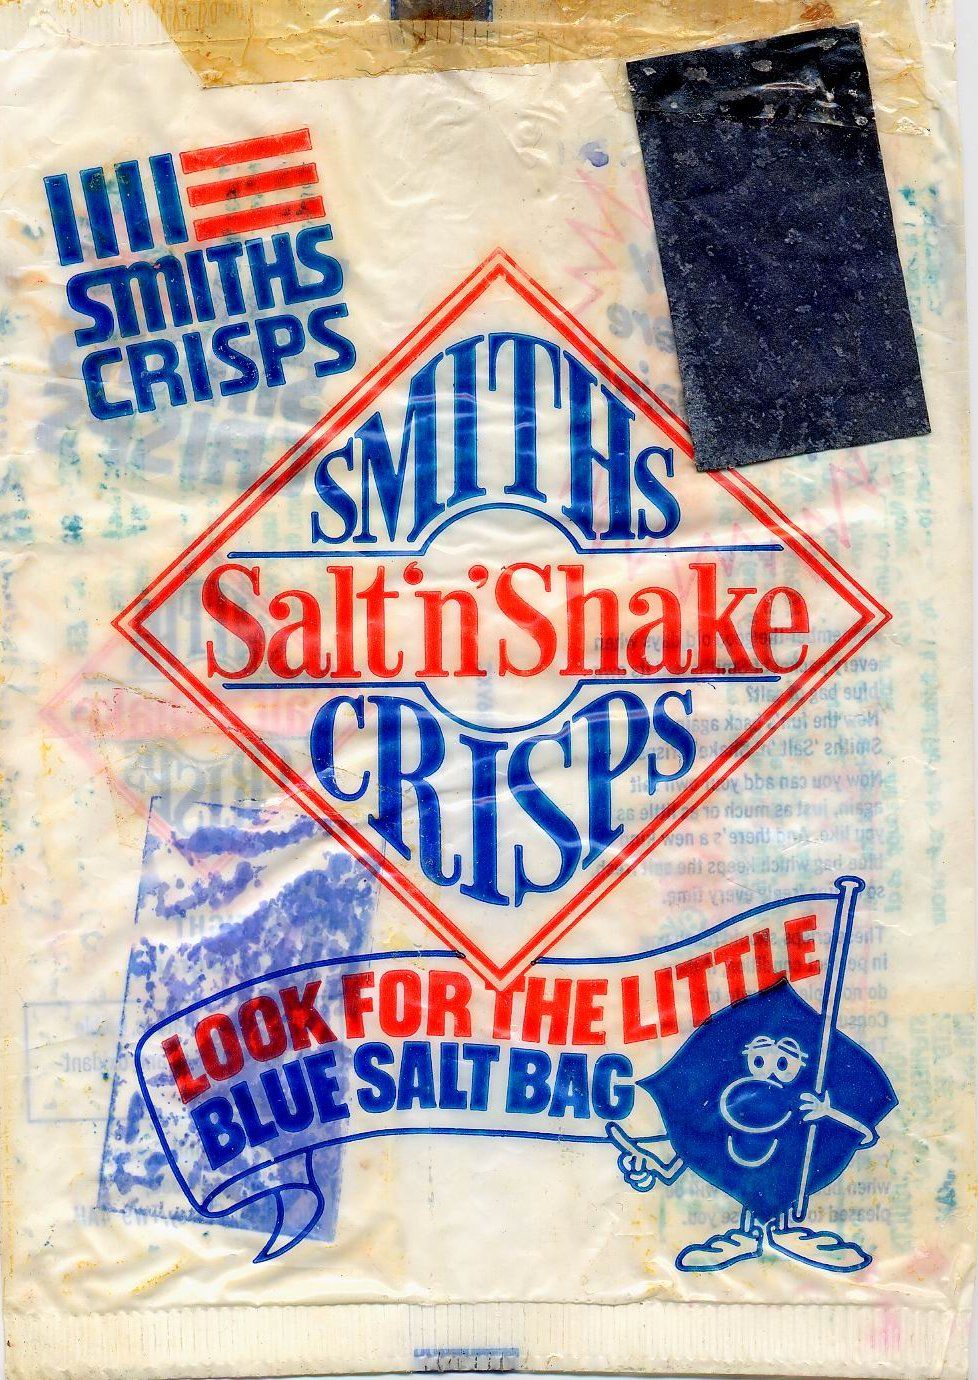 smiths salt and shake crisps